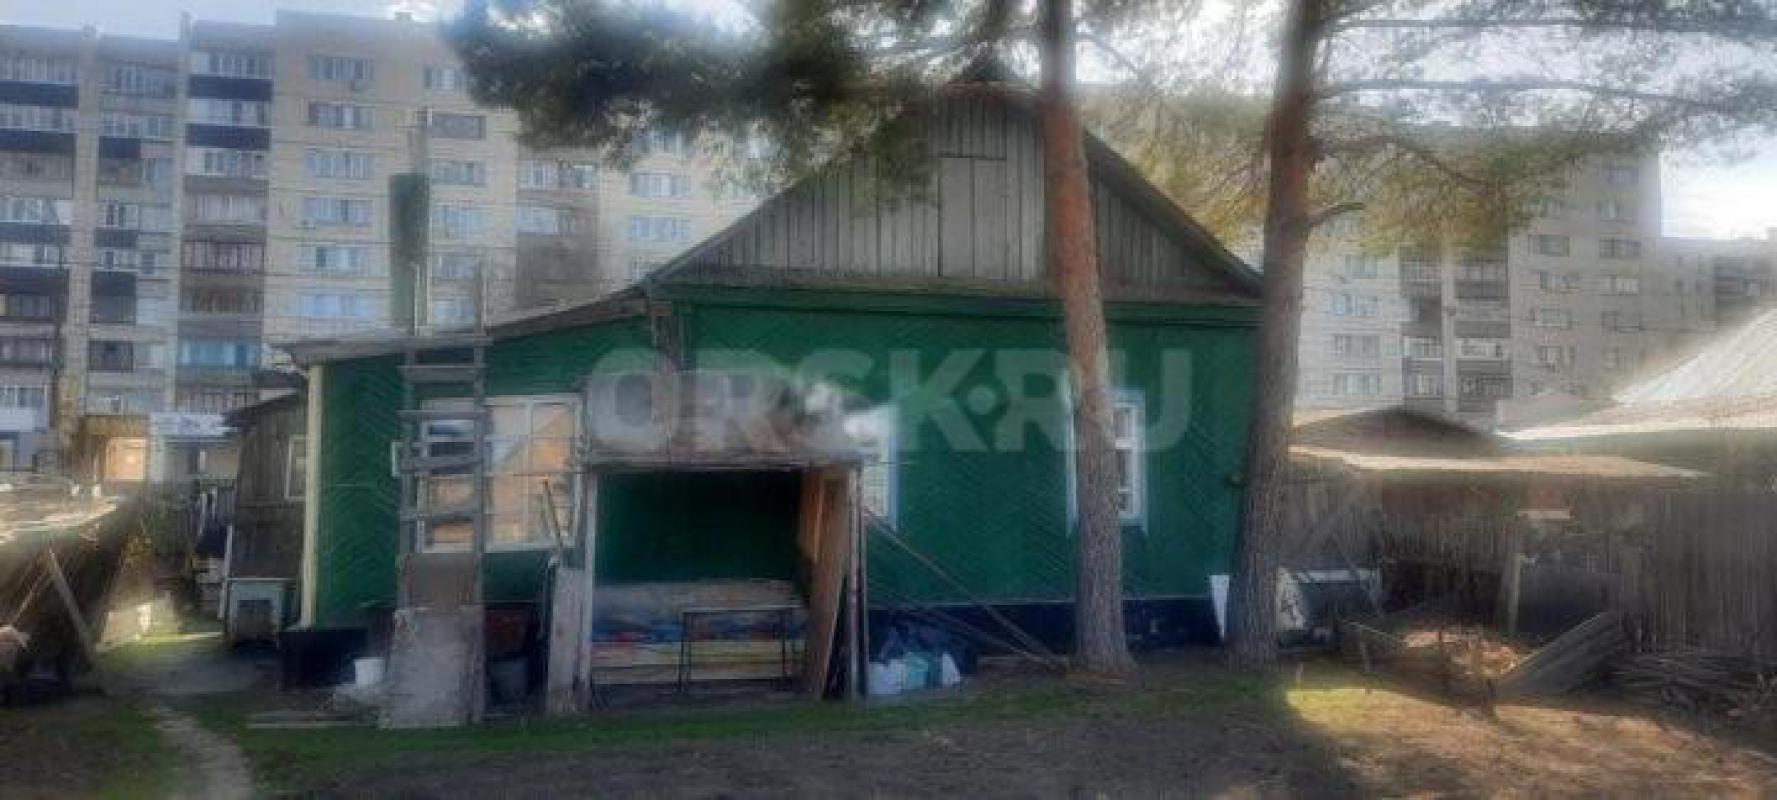 Продам дом В востребованной районе города по проспекту Ленина (первая линия) р-н остановки Тбилисска - Орск